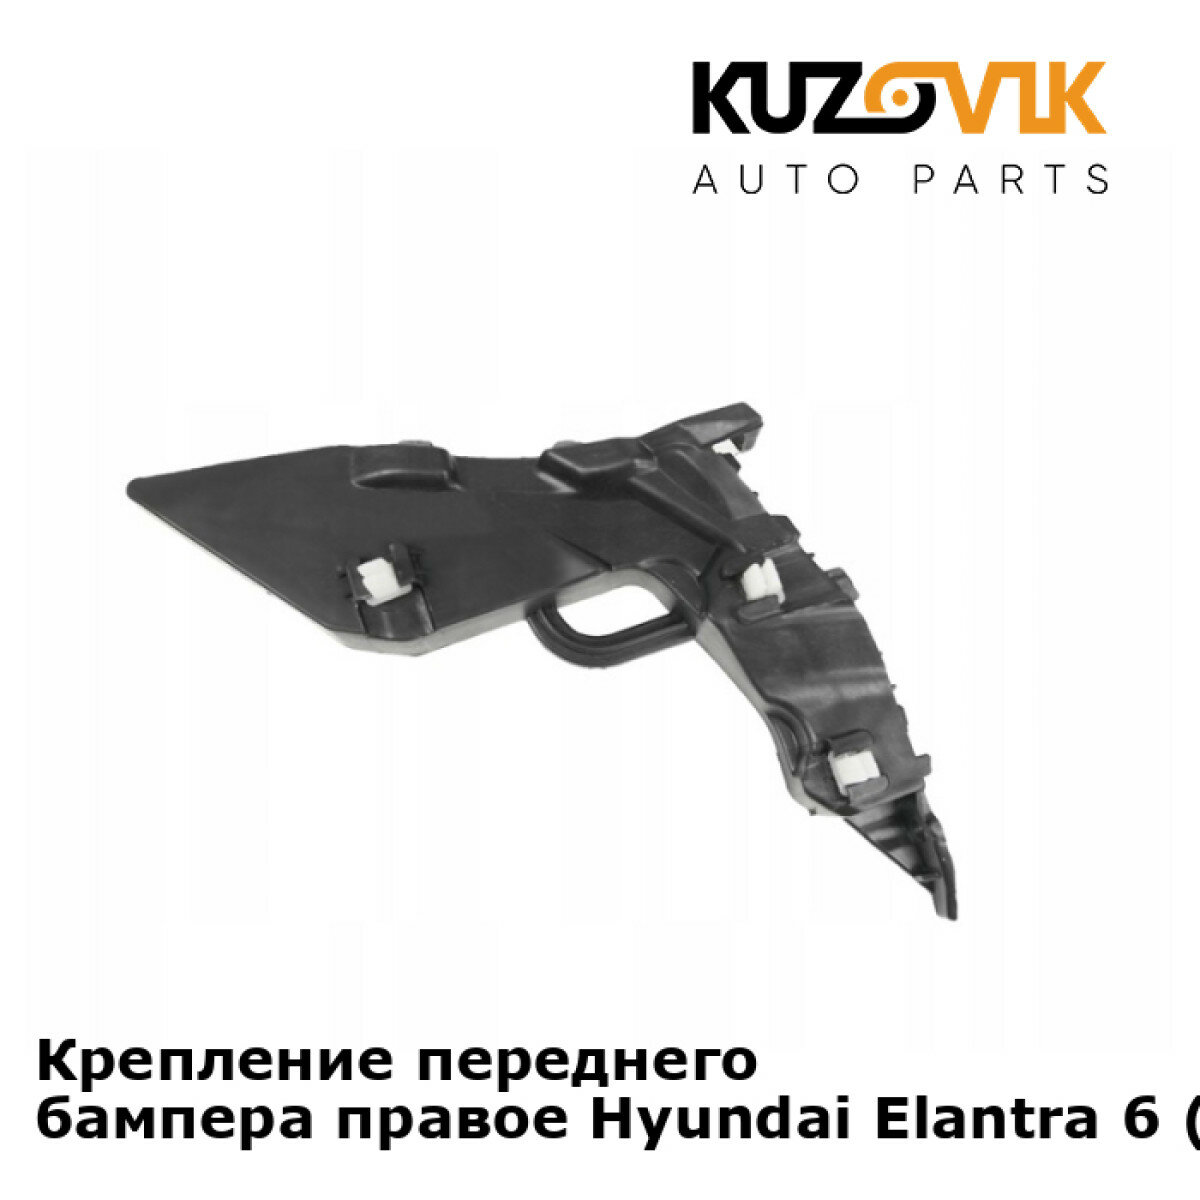 Крепление переднего бампера правое Hyundai Elantra 6 (2016-)